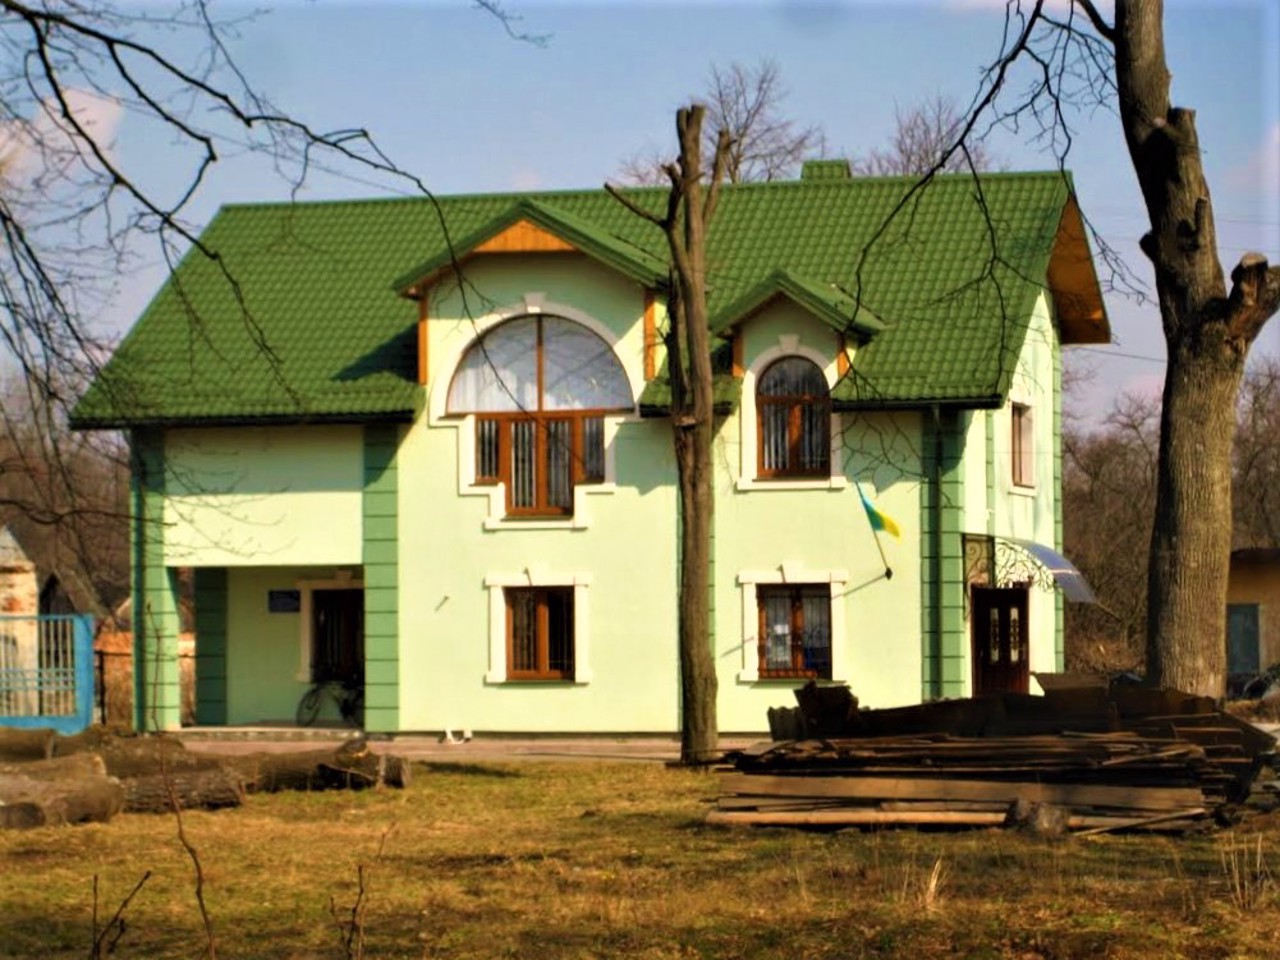 Pasiky-Zubrytski village